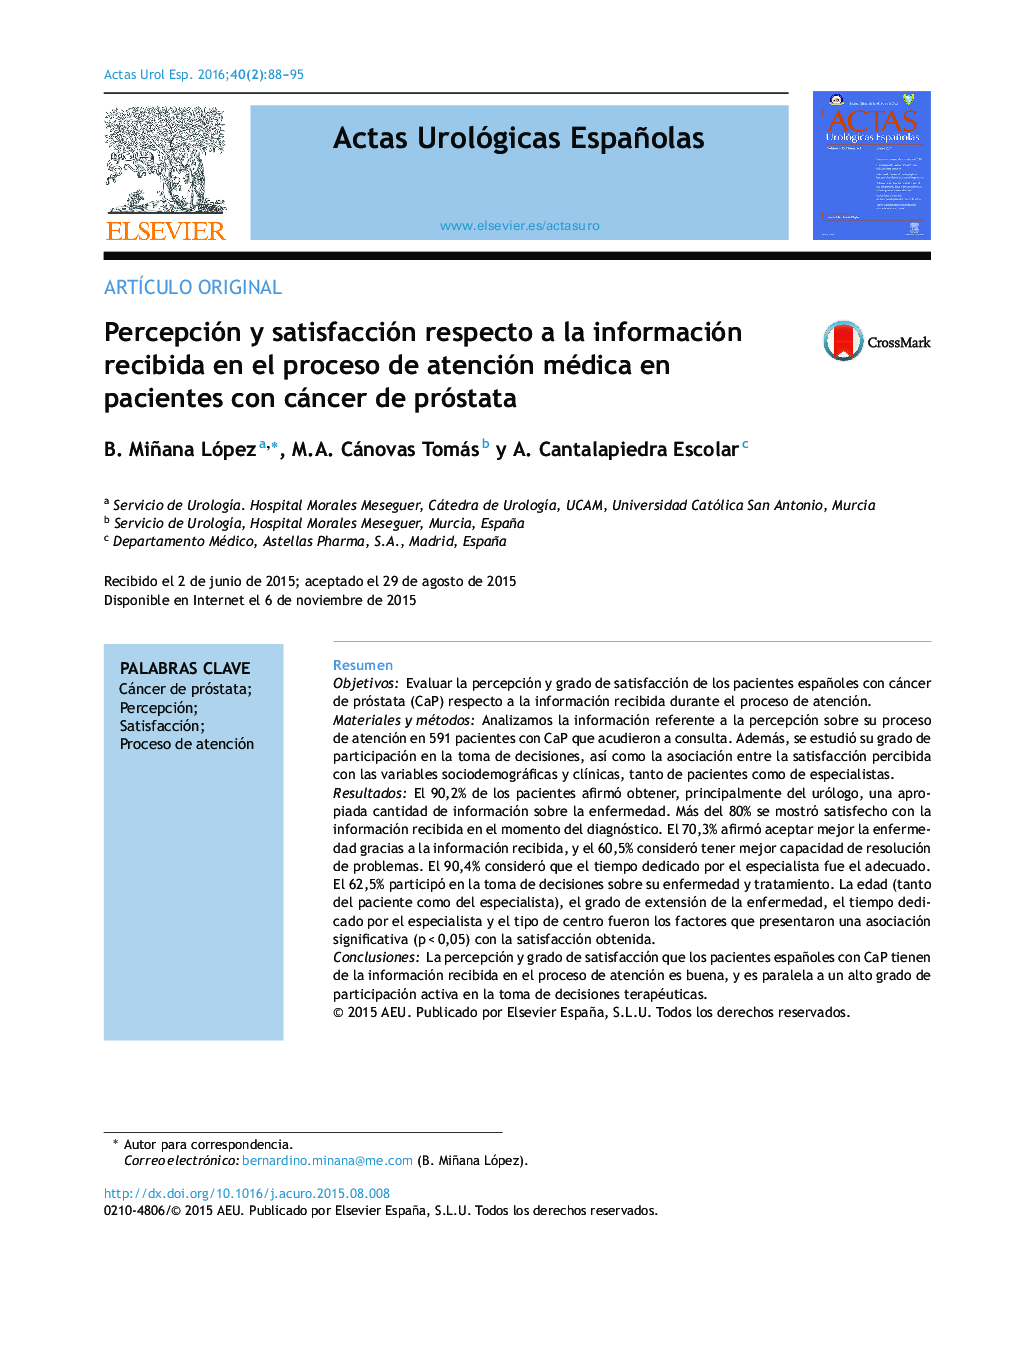 Percepción y satisfacción respecto a la información recibida en el proceso de atención médica en pacientes con cáncer de próstata